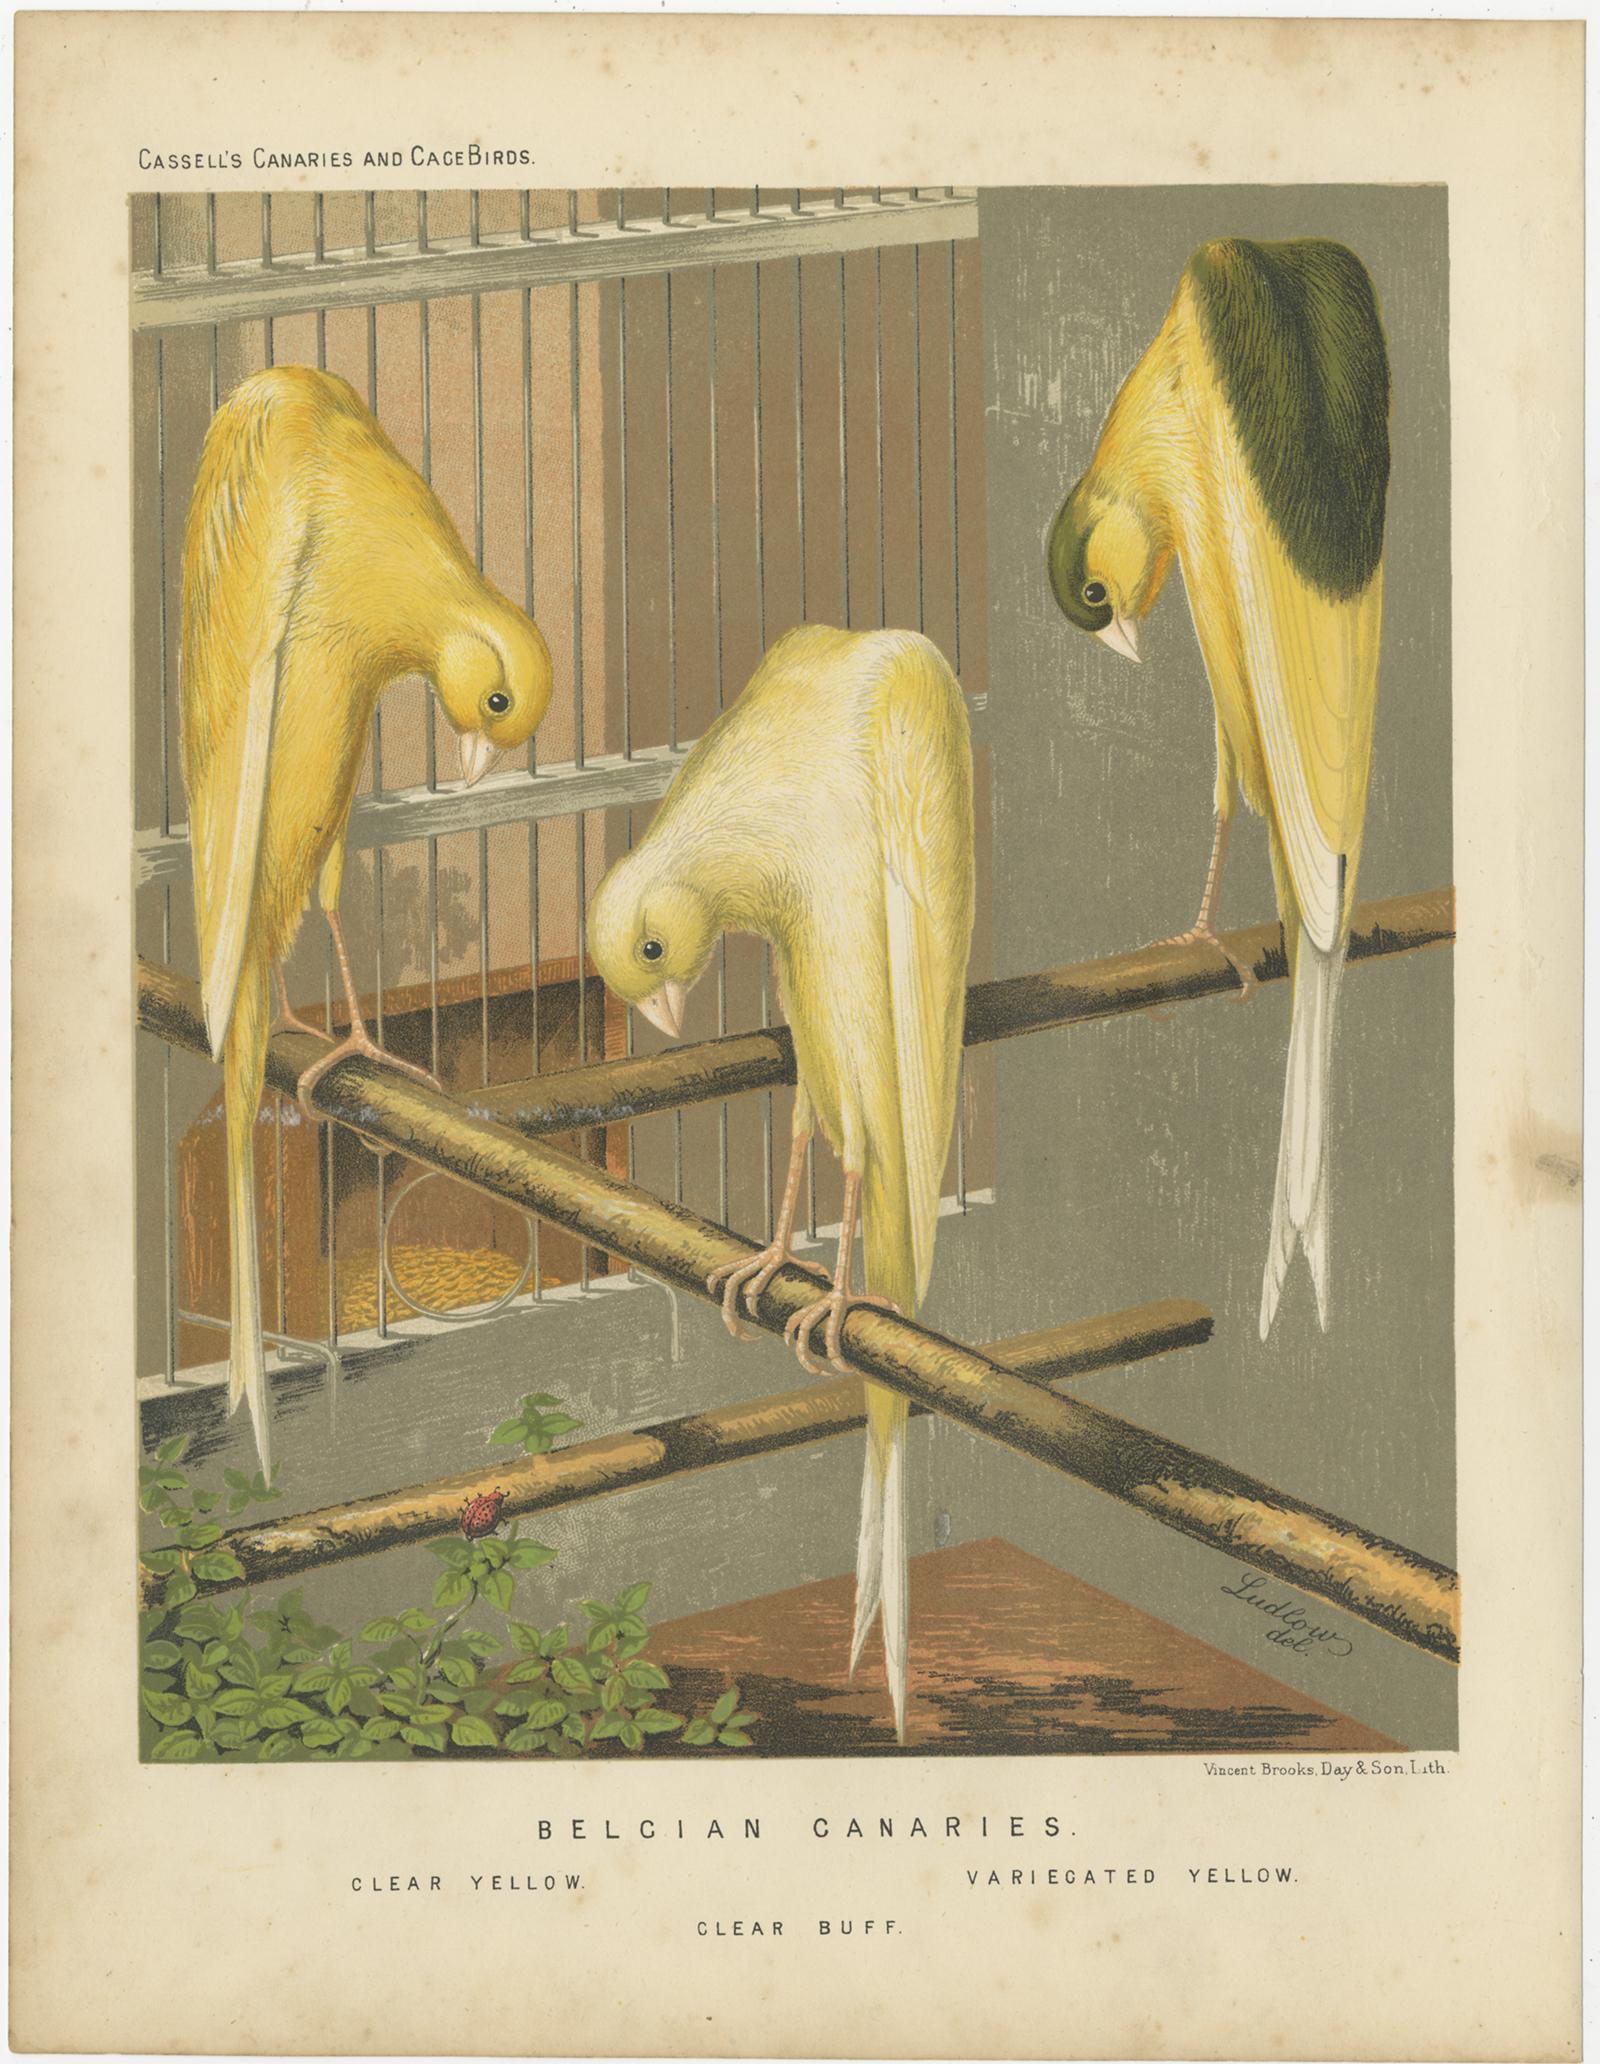 Antiker Vogeldruck mit dem Titel 'Belcian Canaries 1. Klares Gelb 2. Variecated Gelb 3. Clear Buff' Alter Vogeldruck, der die Kanarienvögel Clear Yellow, Variecated Yellow und Clear Buff darstellt. Dieser Druck stammt aus: 'Illustrated book of